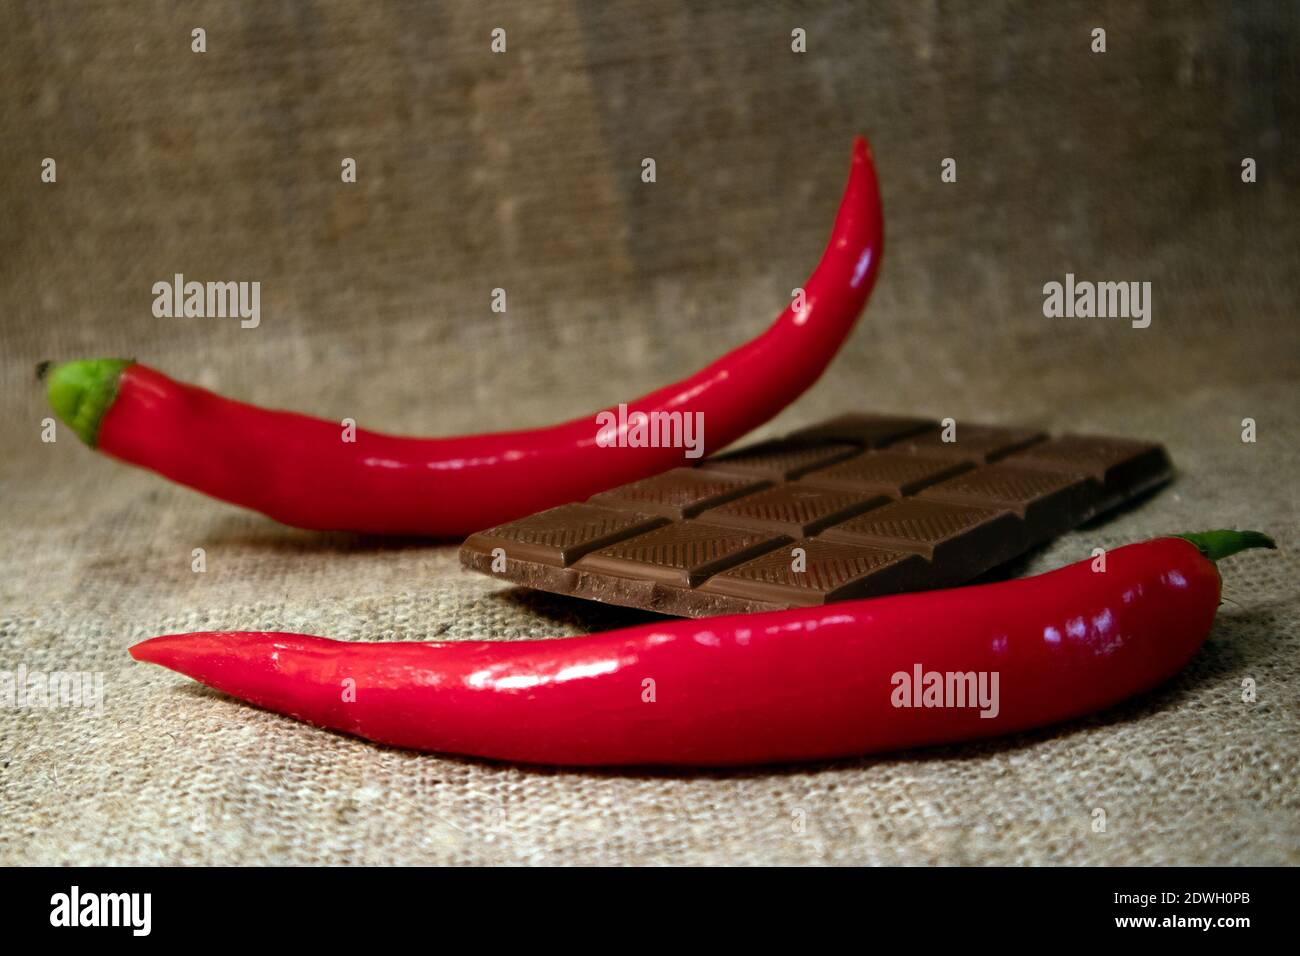 Peperoncino rosso caldo e barretta di cioccolato rotta contro ruvida burlap Foto Stock